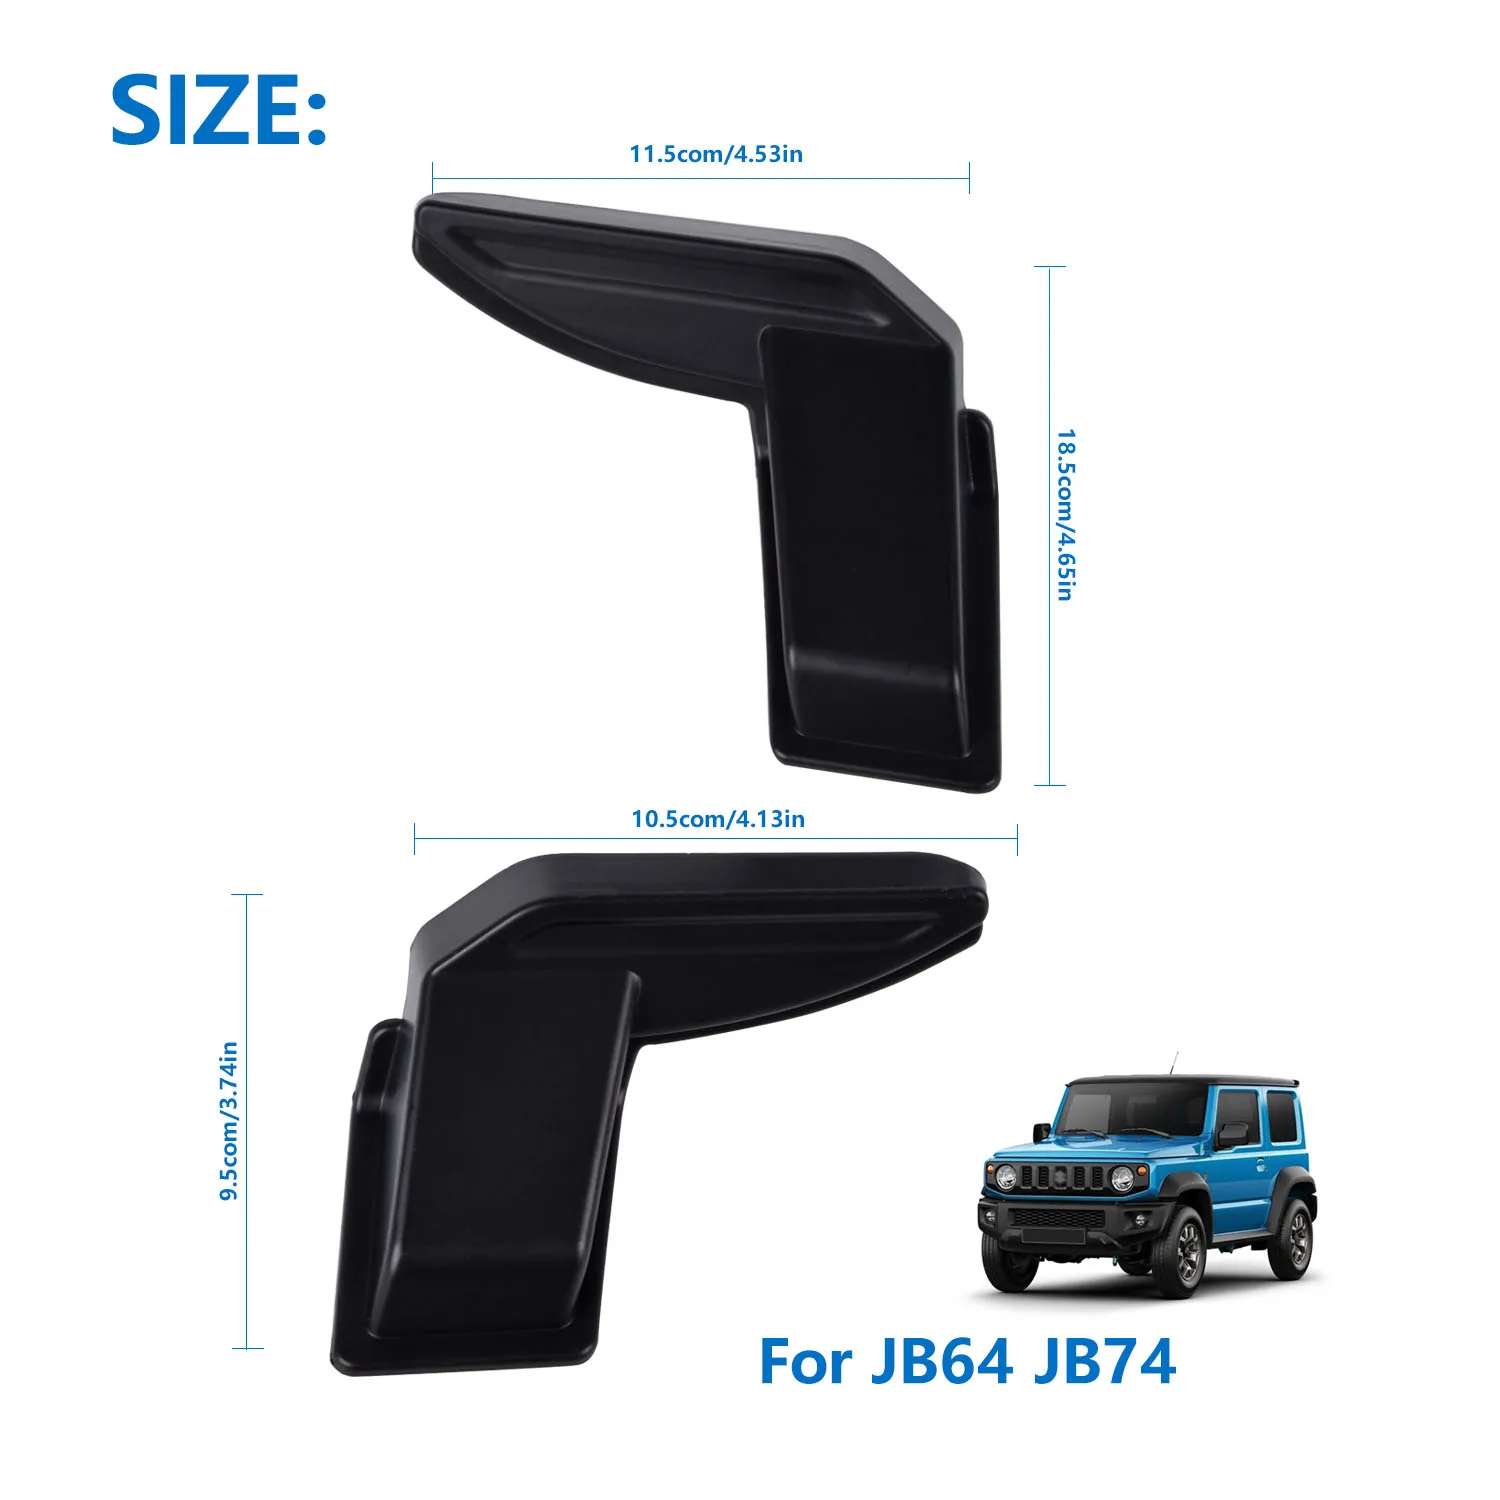 Protector de cable calefactor para parabrisas trasero, embellecedor de cubierta para Suzuki Jimny Sierra JB64 JB74 2007-2022, accesorio Interior de coche, 2 uds.